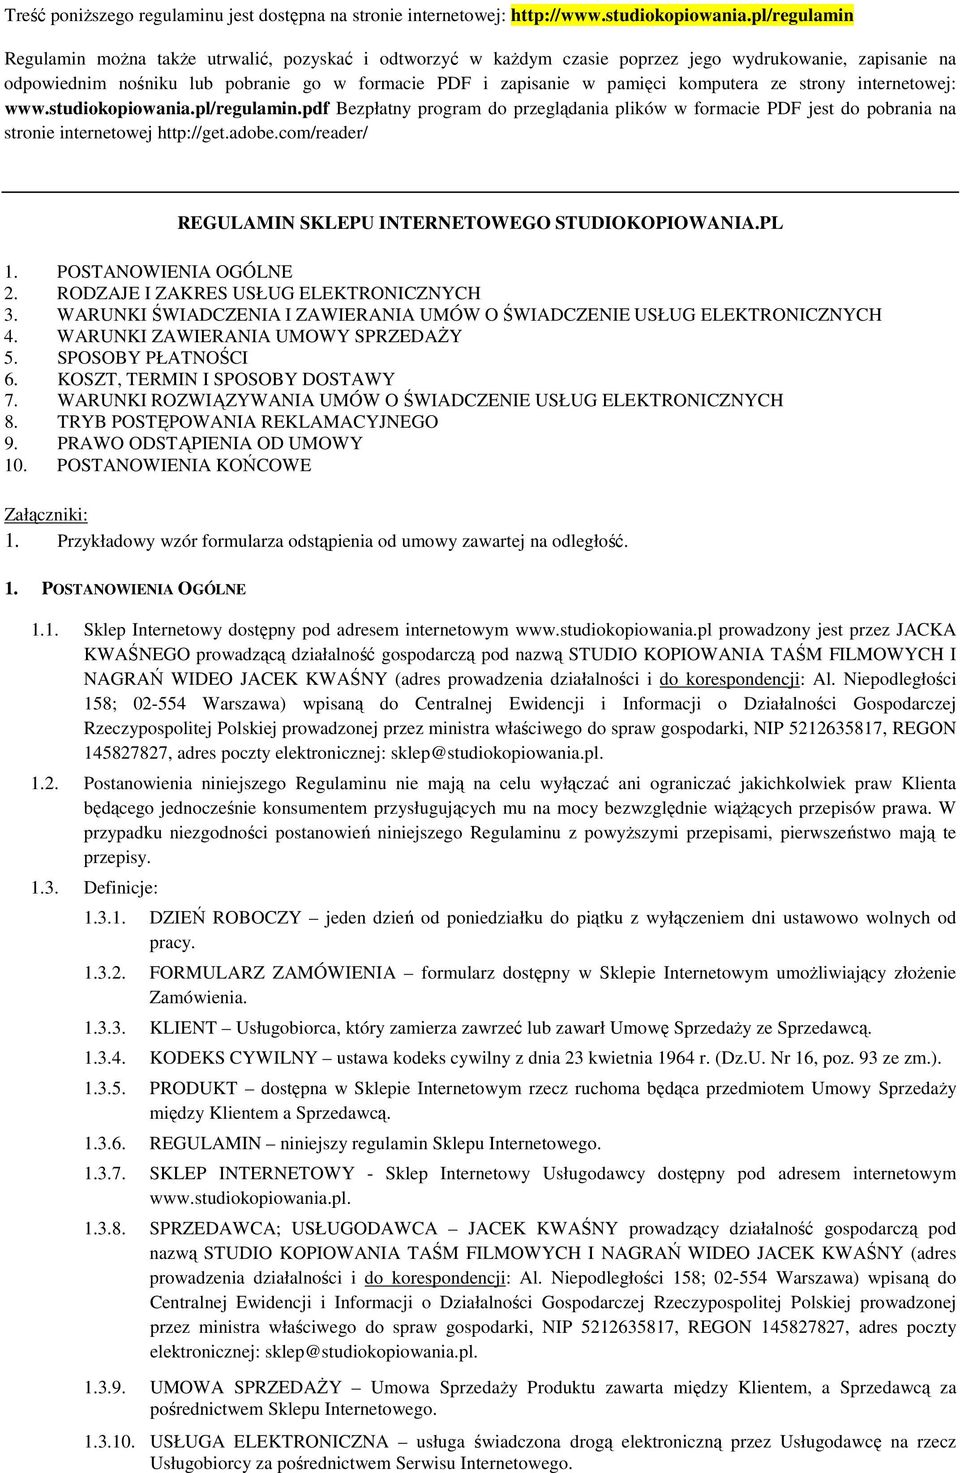 komputera ze strony internetowej: www.studiokopiowania.pl/regulamin.pdf Bezpłatny program do przeglądania plików w formacie PDF jest do pobrania na stronie internetowej http://get.adobe.